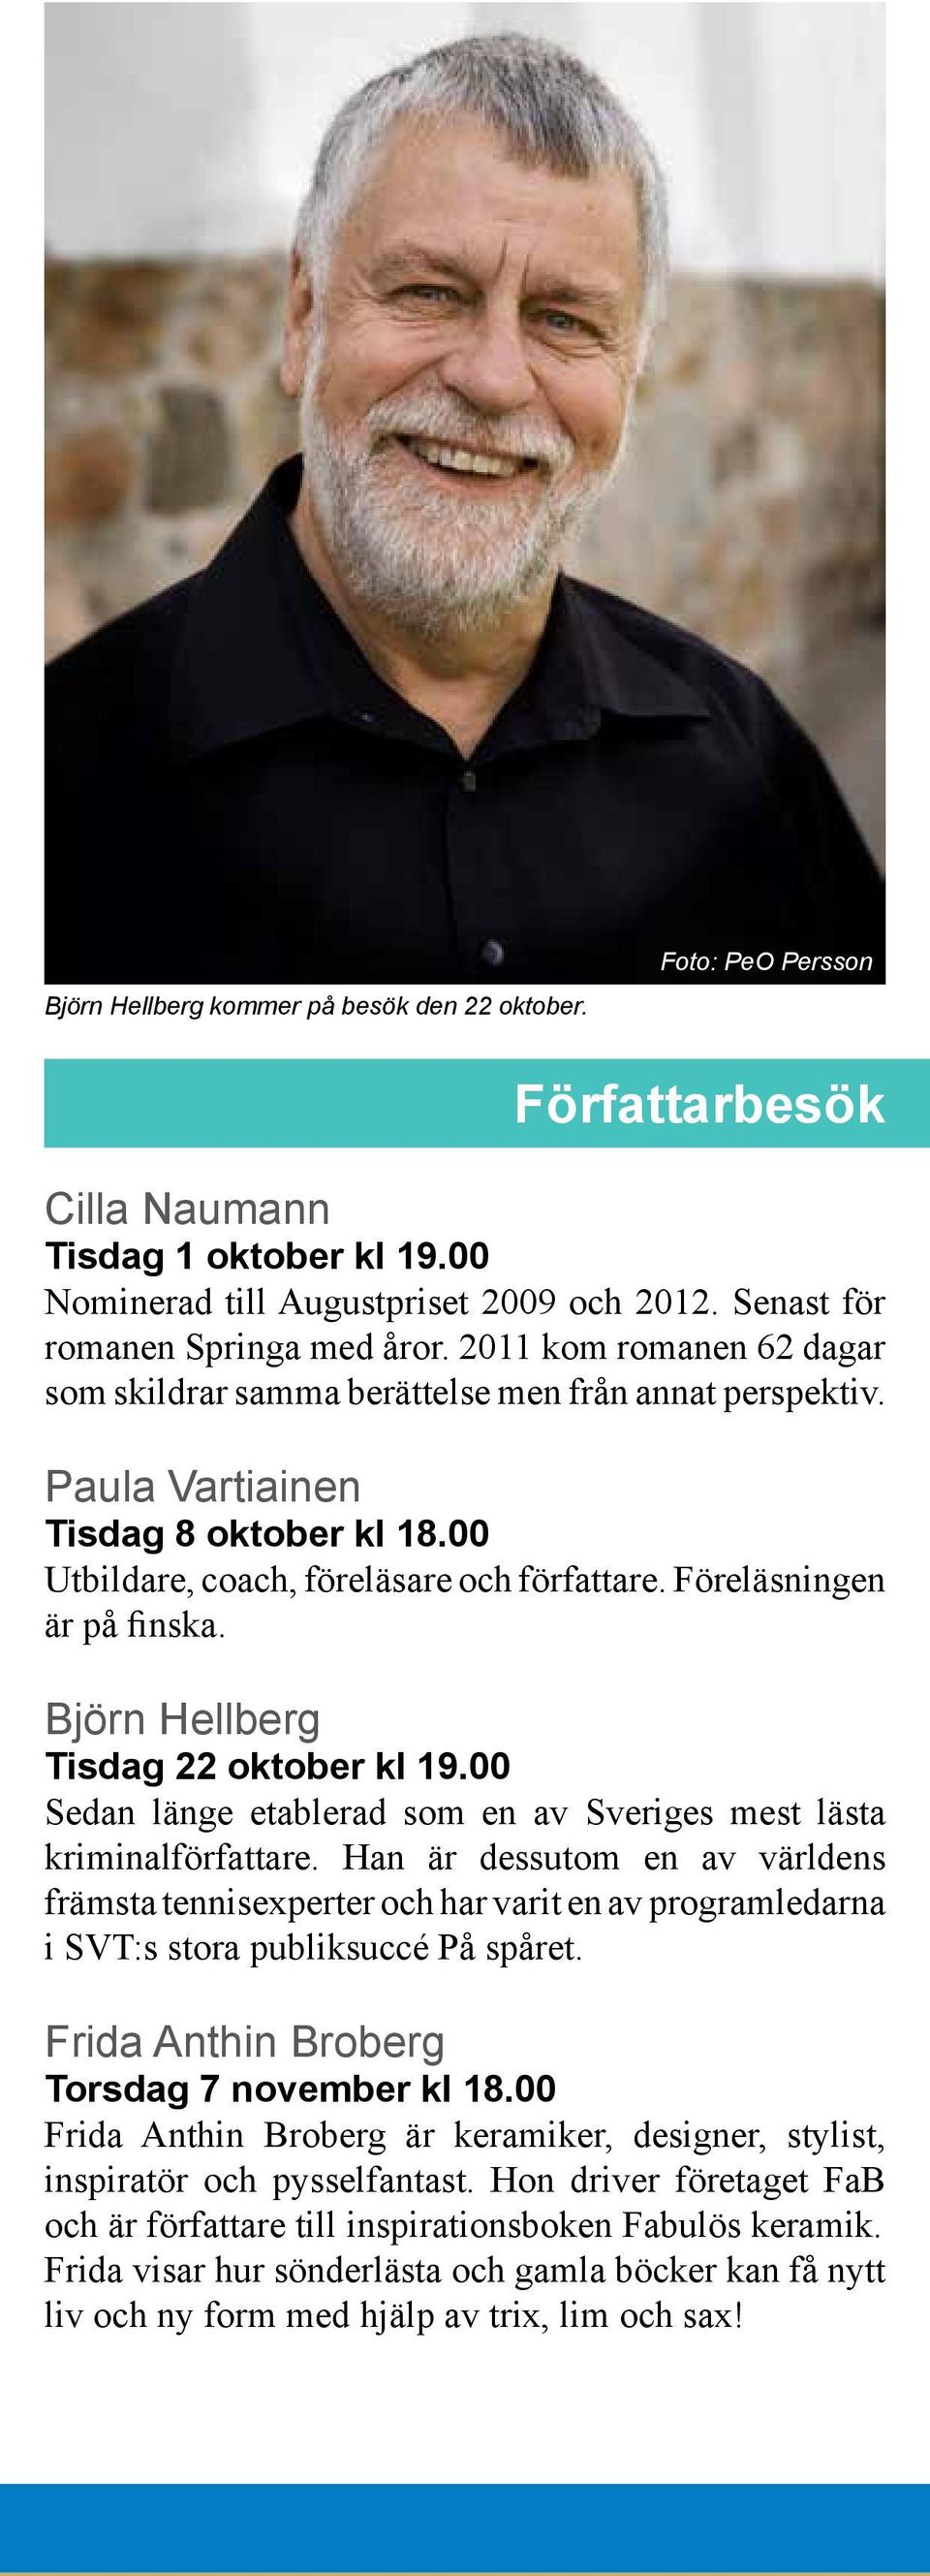 Björn Hellberg Tisdag 22 oktober kl 19.00 Sedan länge etablerad som en av Sveriges mest lästa kriminalförfattare.